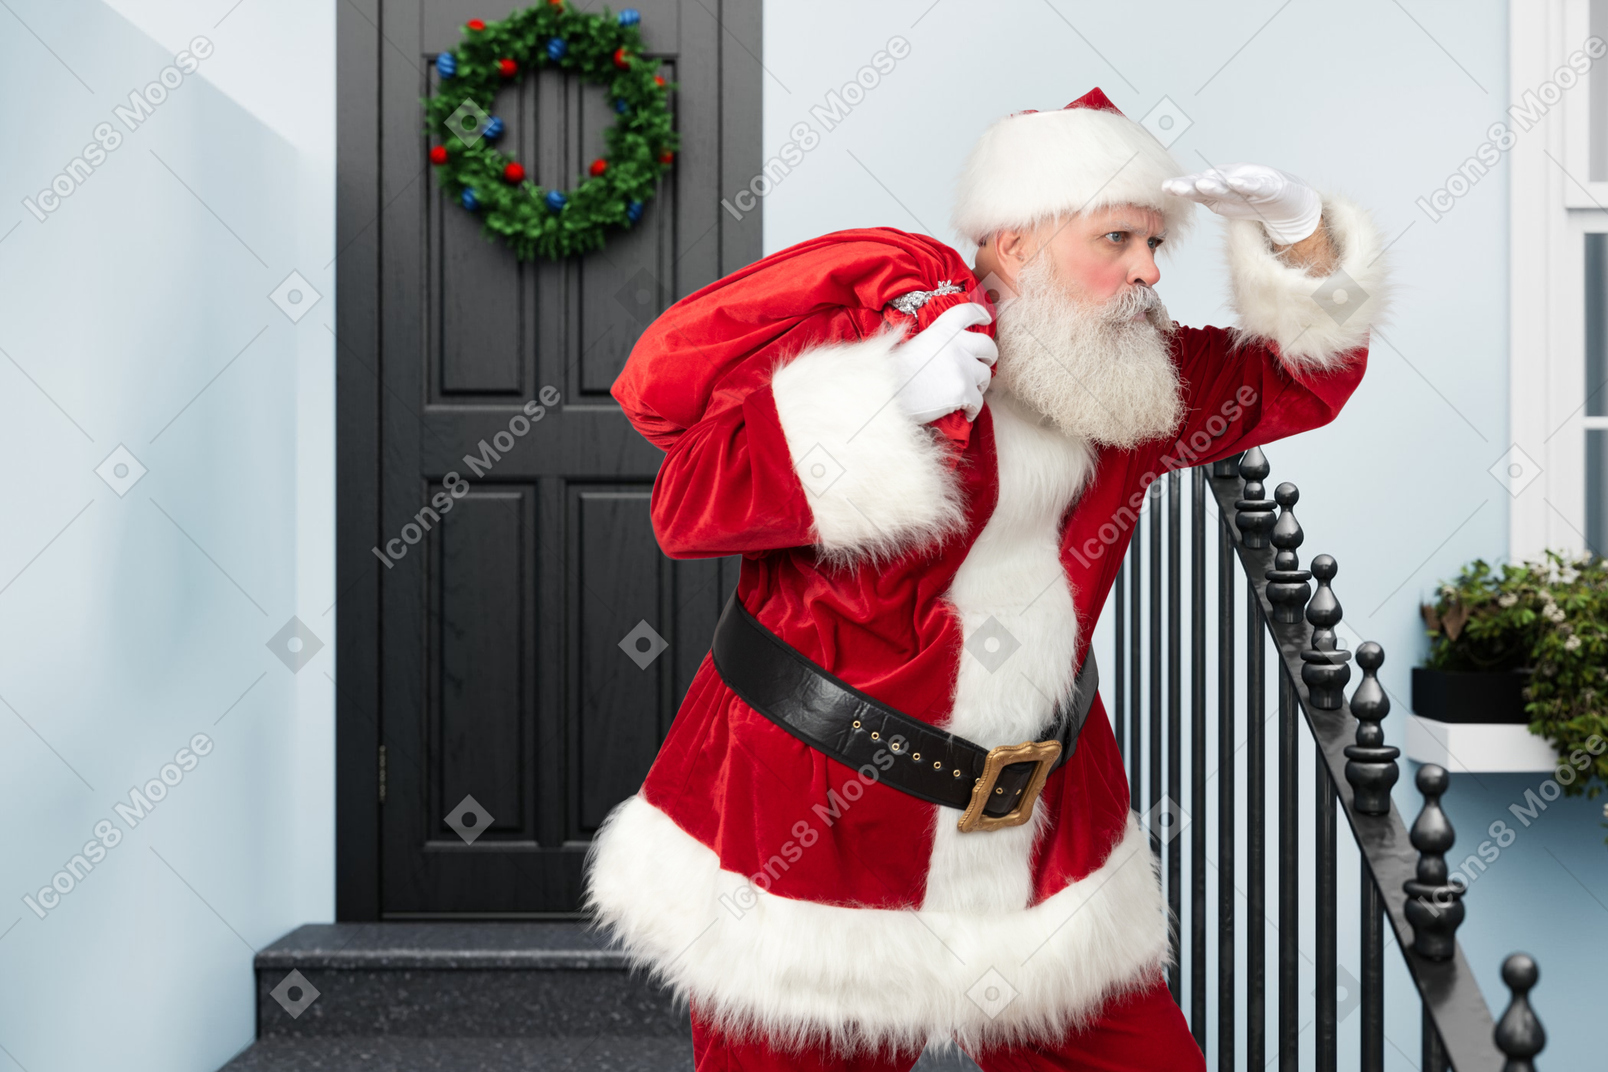 Weihnachtsmann auf der suche nach dem nächsten haus, um geschenke zu bringen